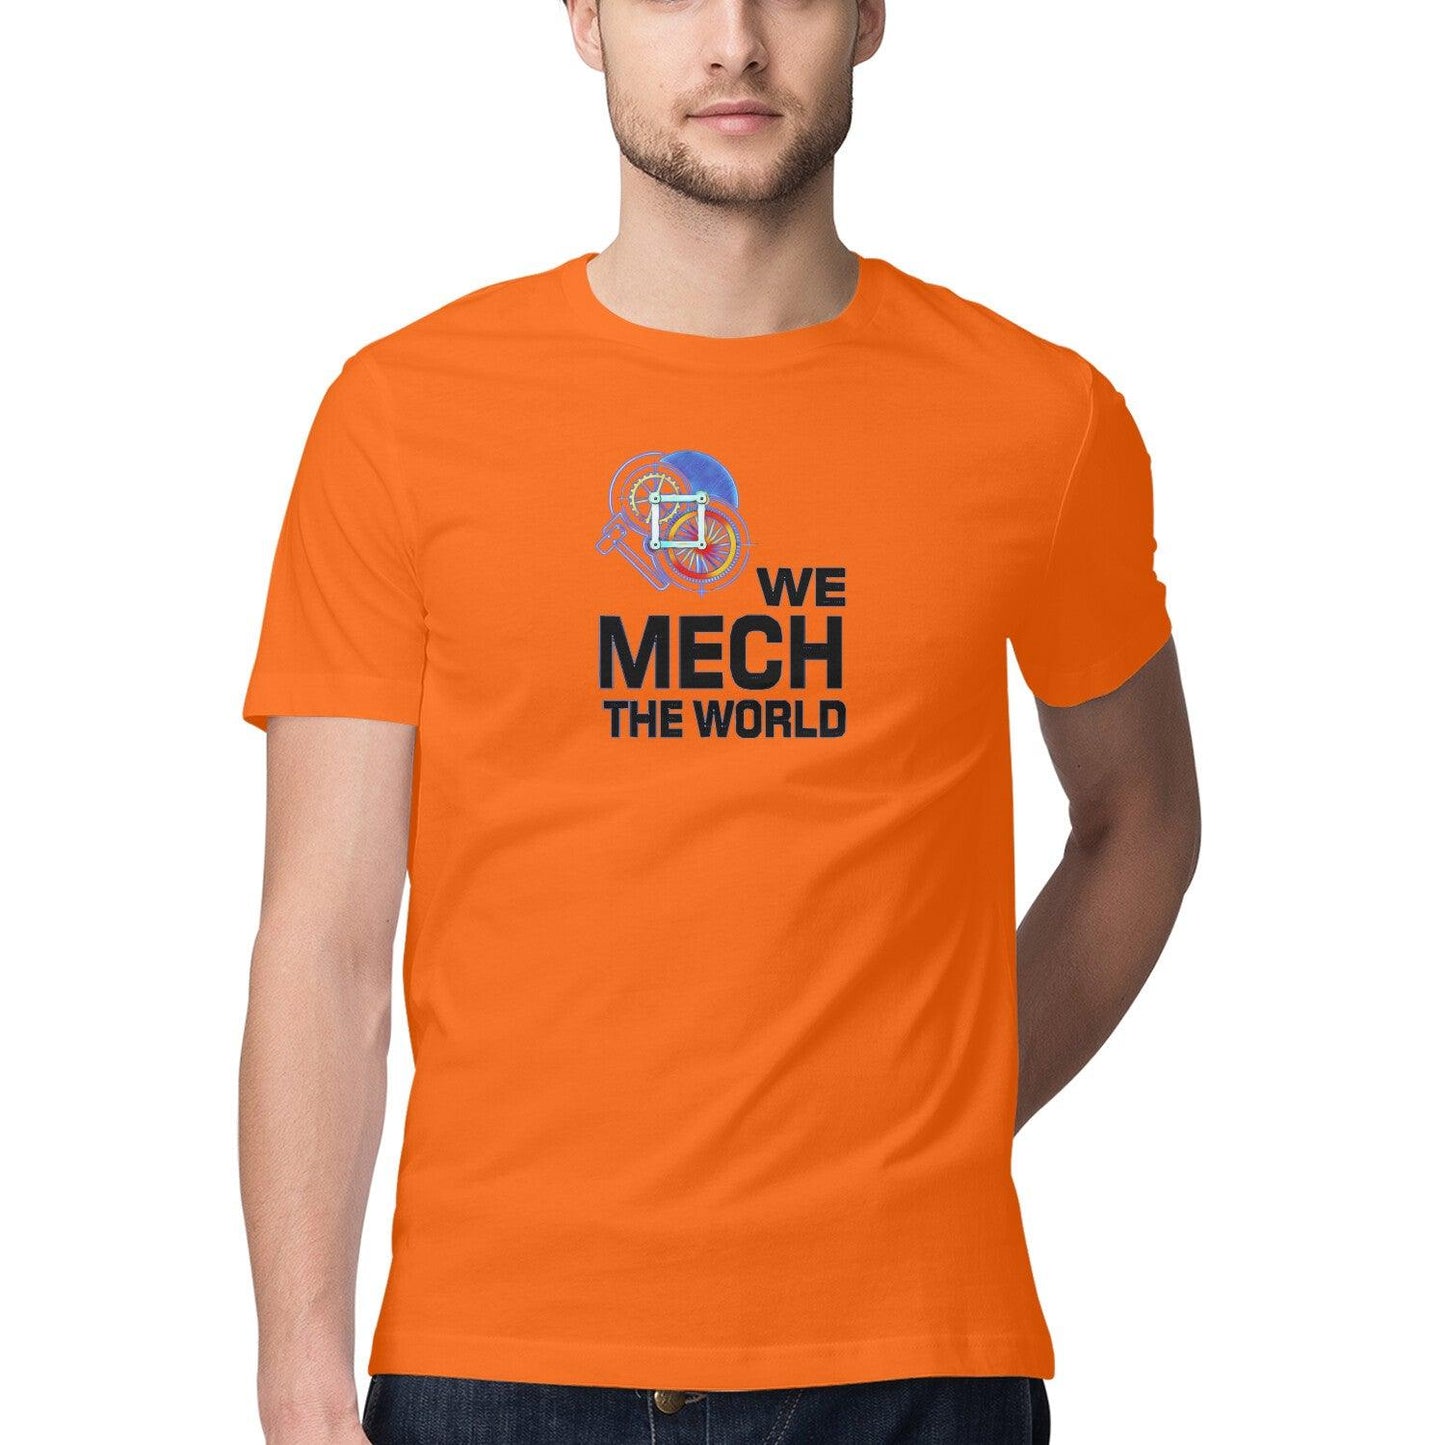 Mechanical Engineer T Shirt for Men D47